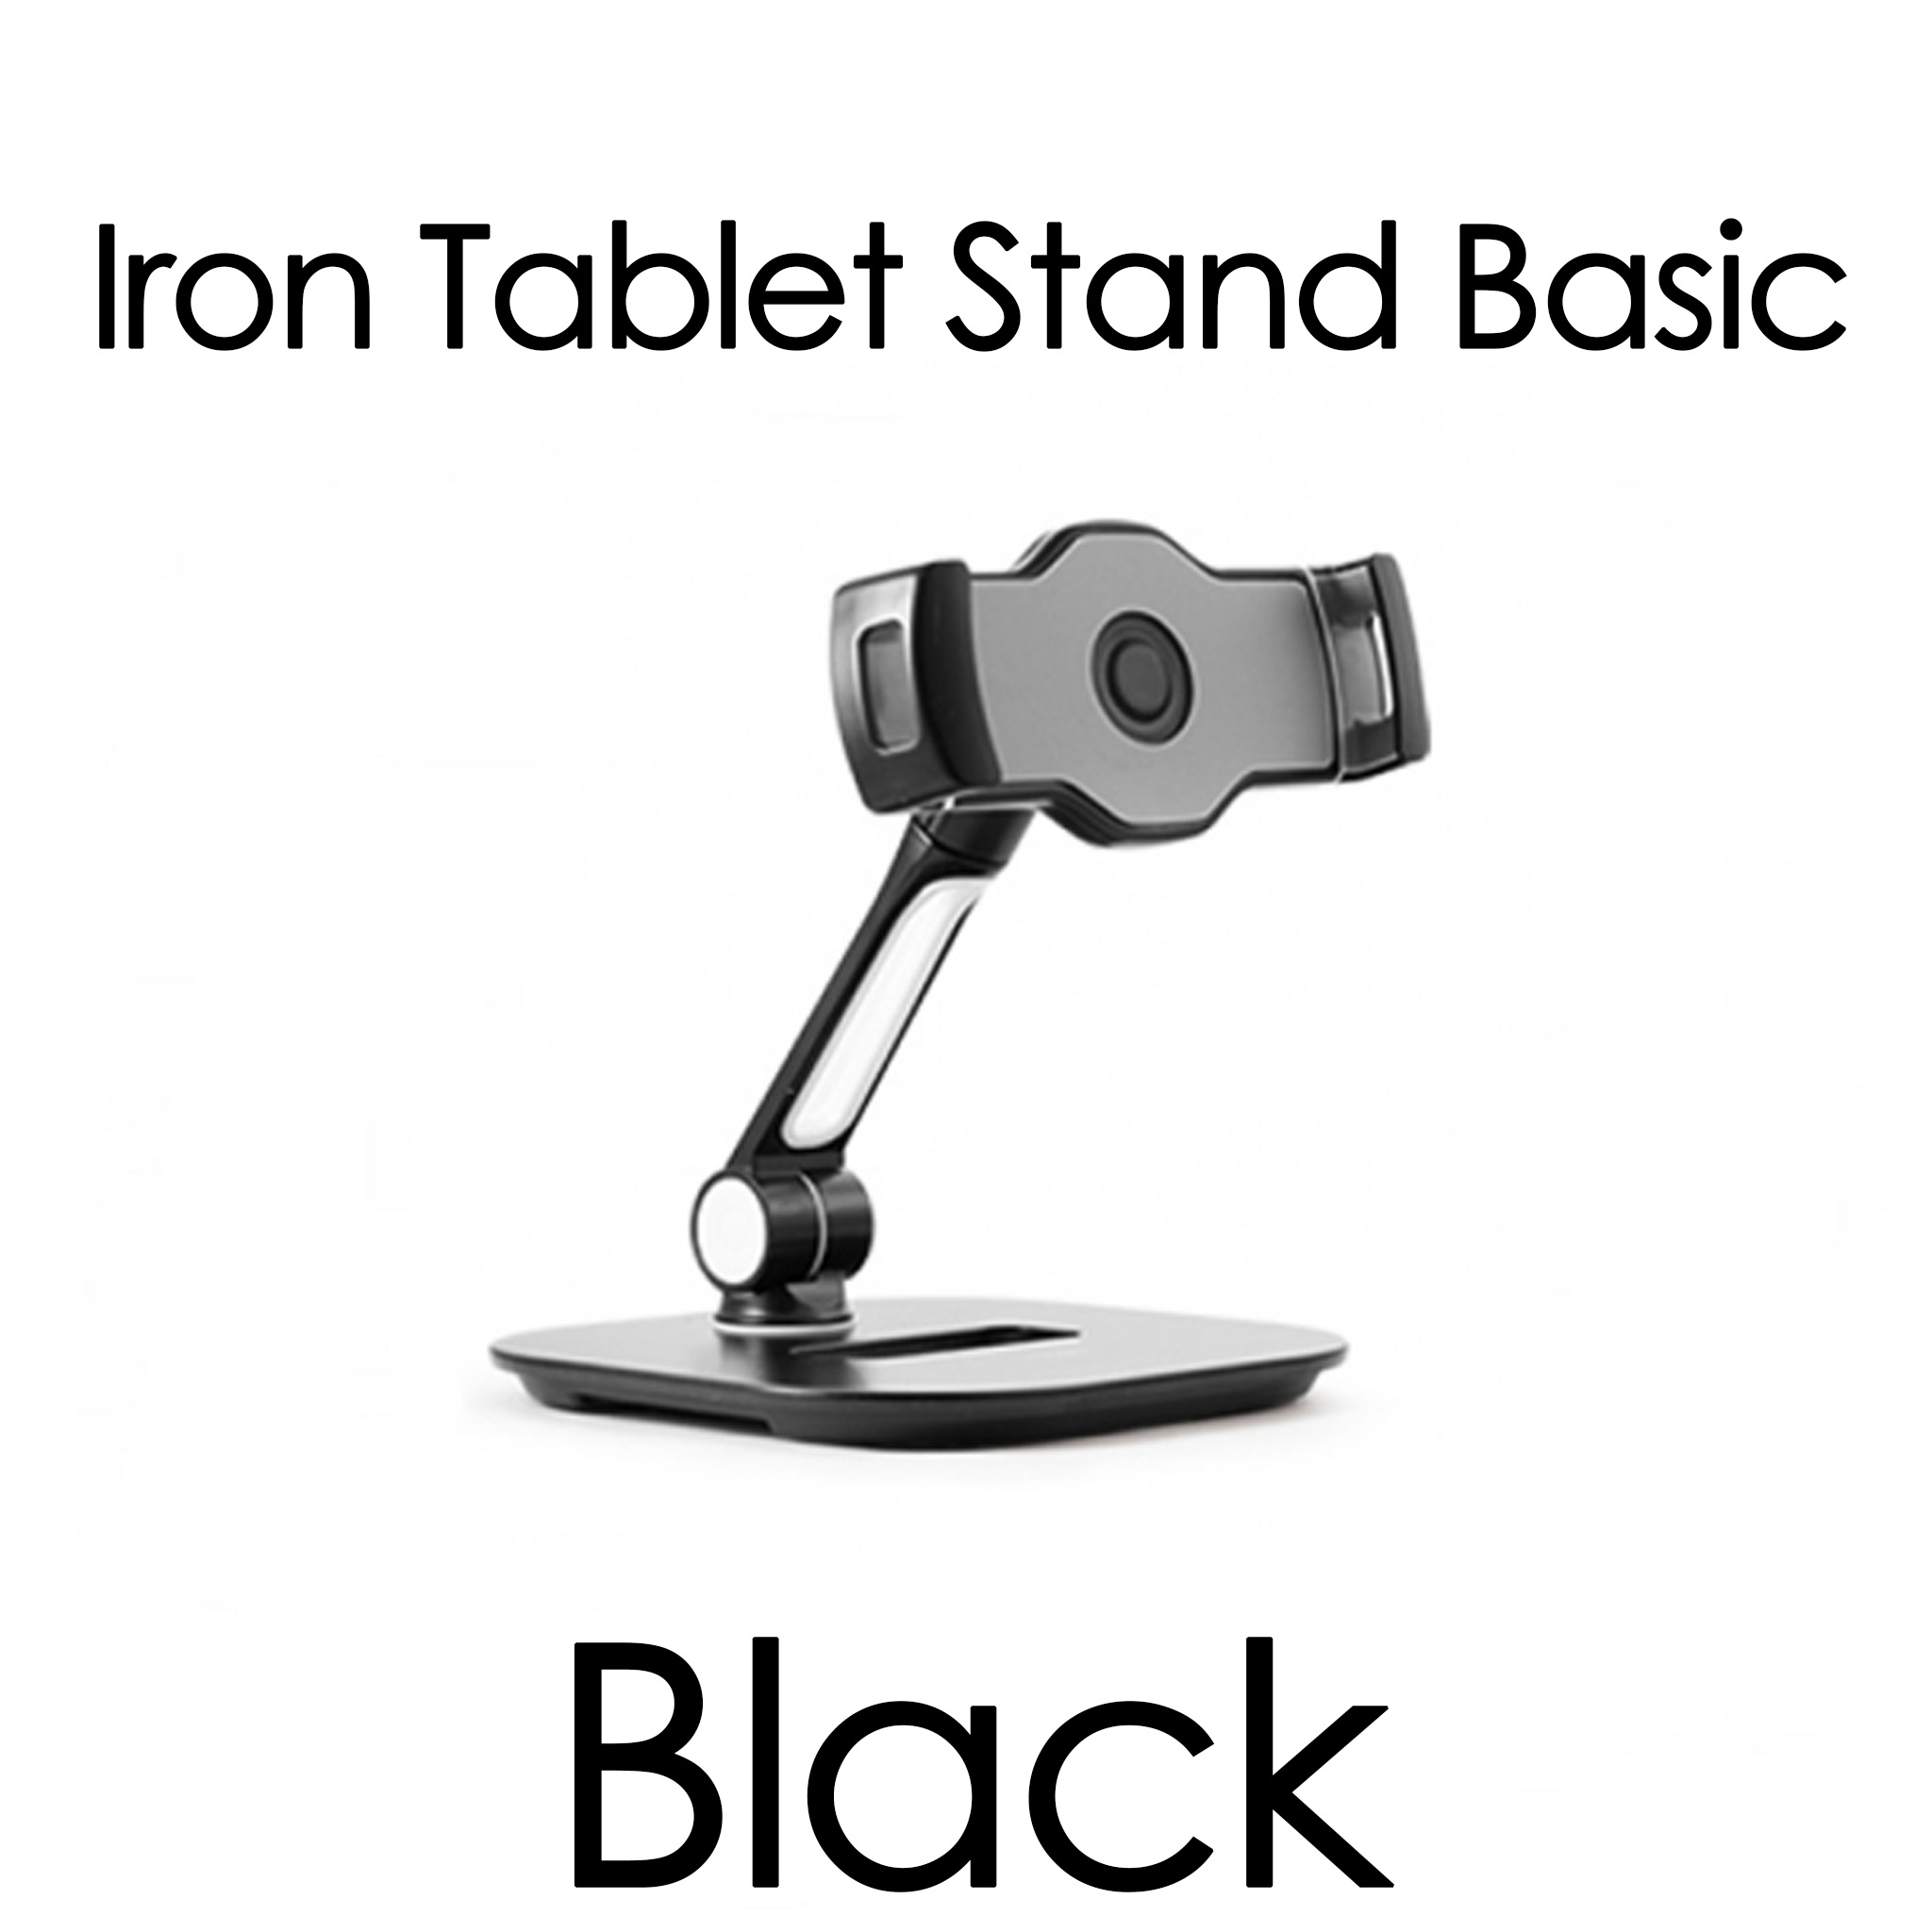 Ringke Iron Tablet Stand แท่นจับสมาร์ทโฟน / แท็ปเลต / iPad ใช้ได้กับขนาด 4 - 13 นิ้ว ปรับหมุนได้ 360 องศา จับแน่นกระชับ